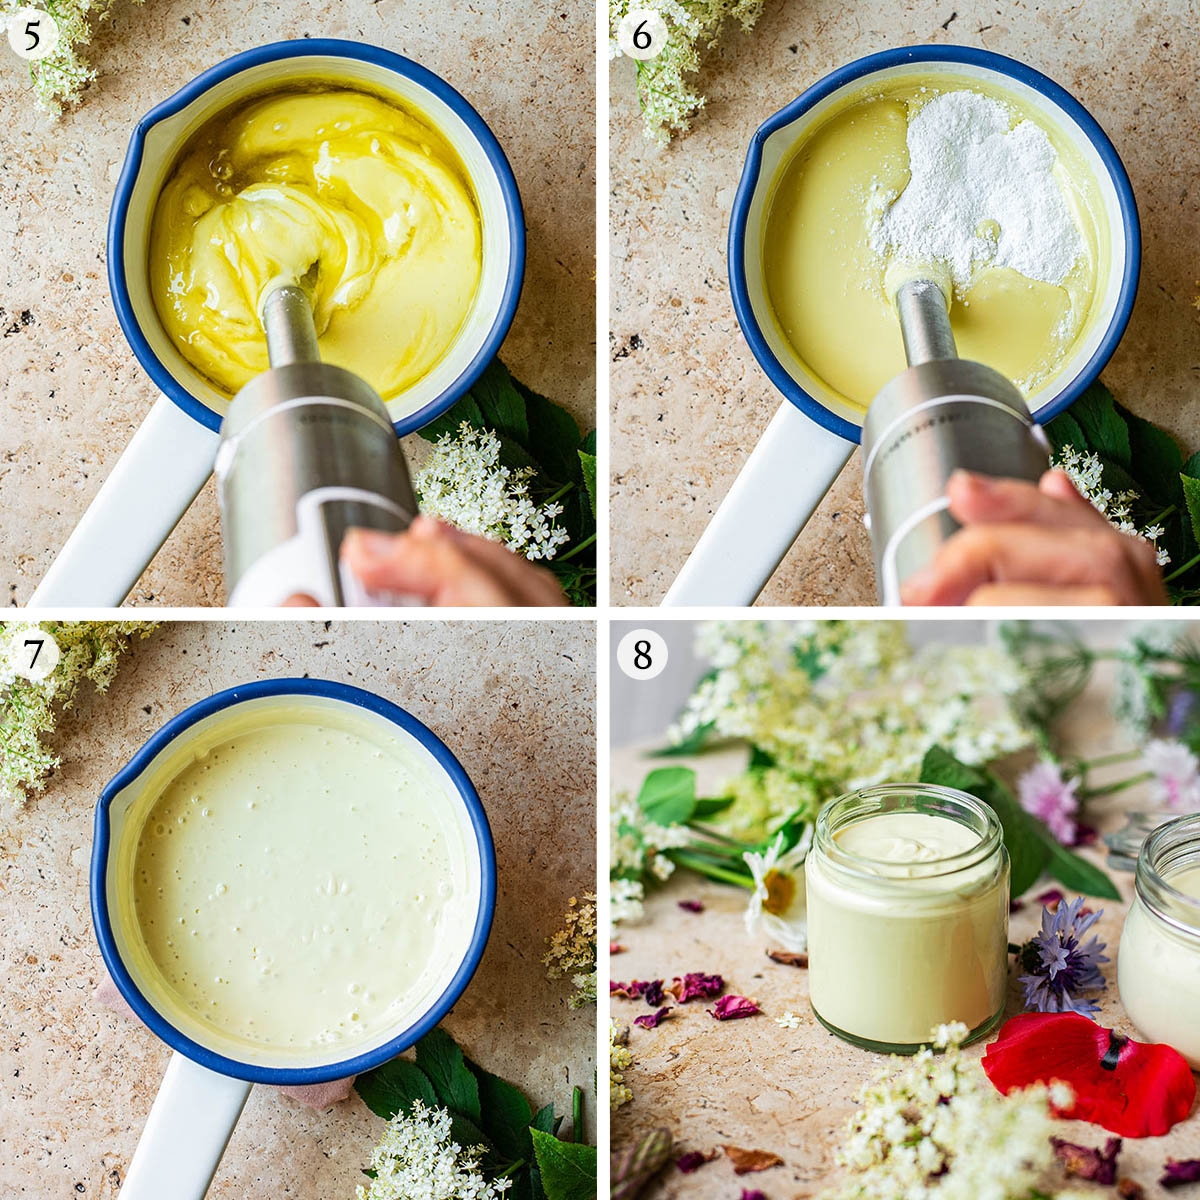 Homemade cream steps 5 to 8.